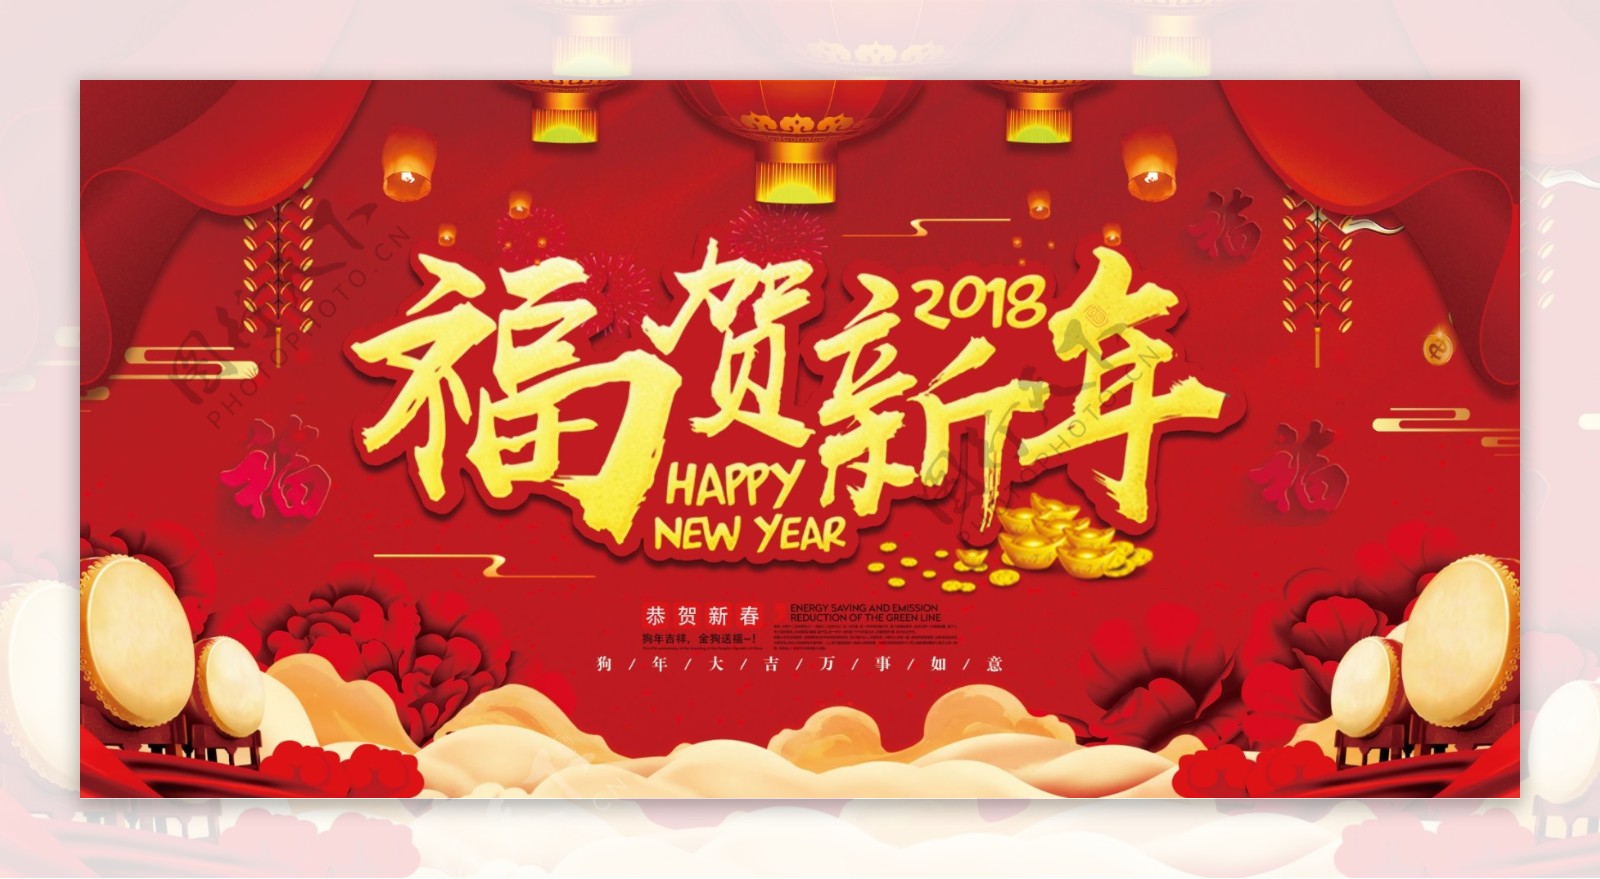 大气红色福贺新年展板设计